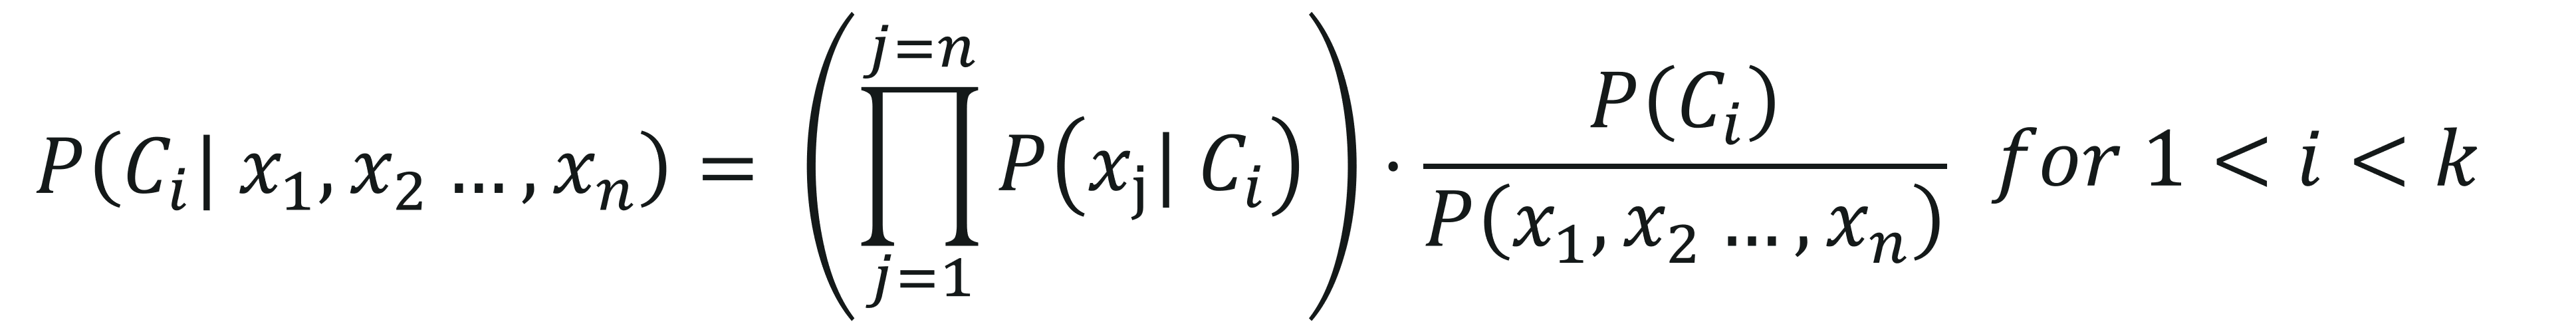 Naive Bayes Derivation Equation 1 - Naive Bayes In R - Edureka